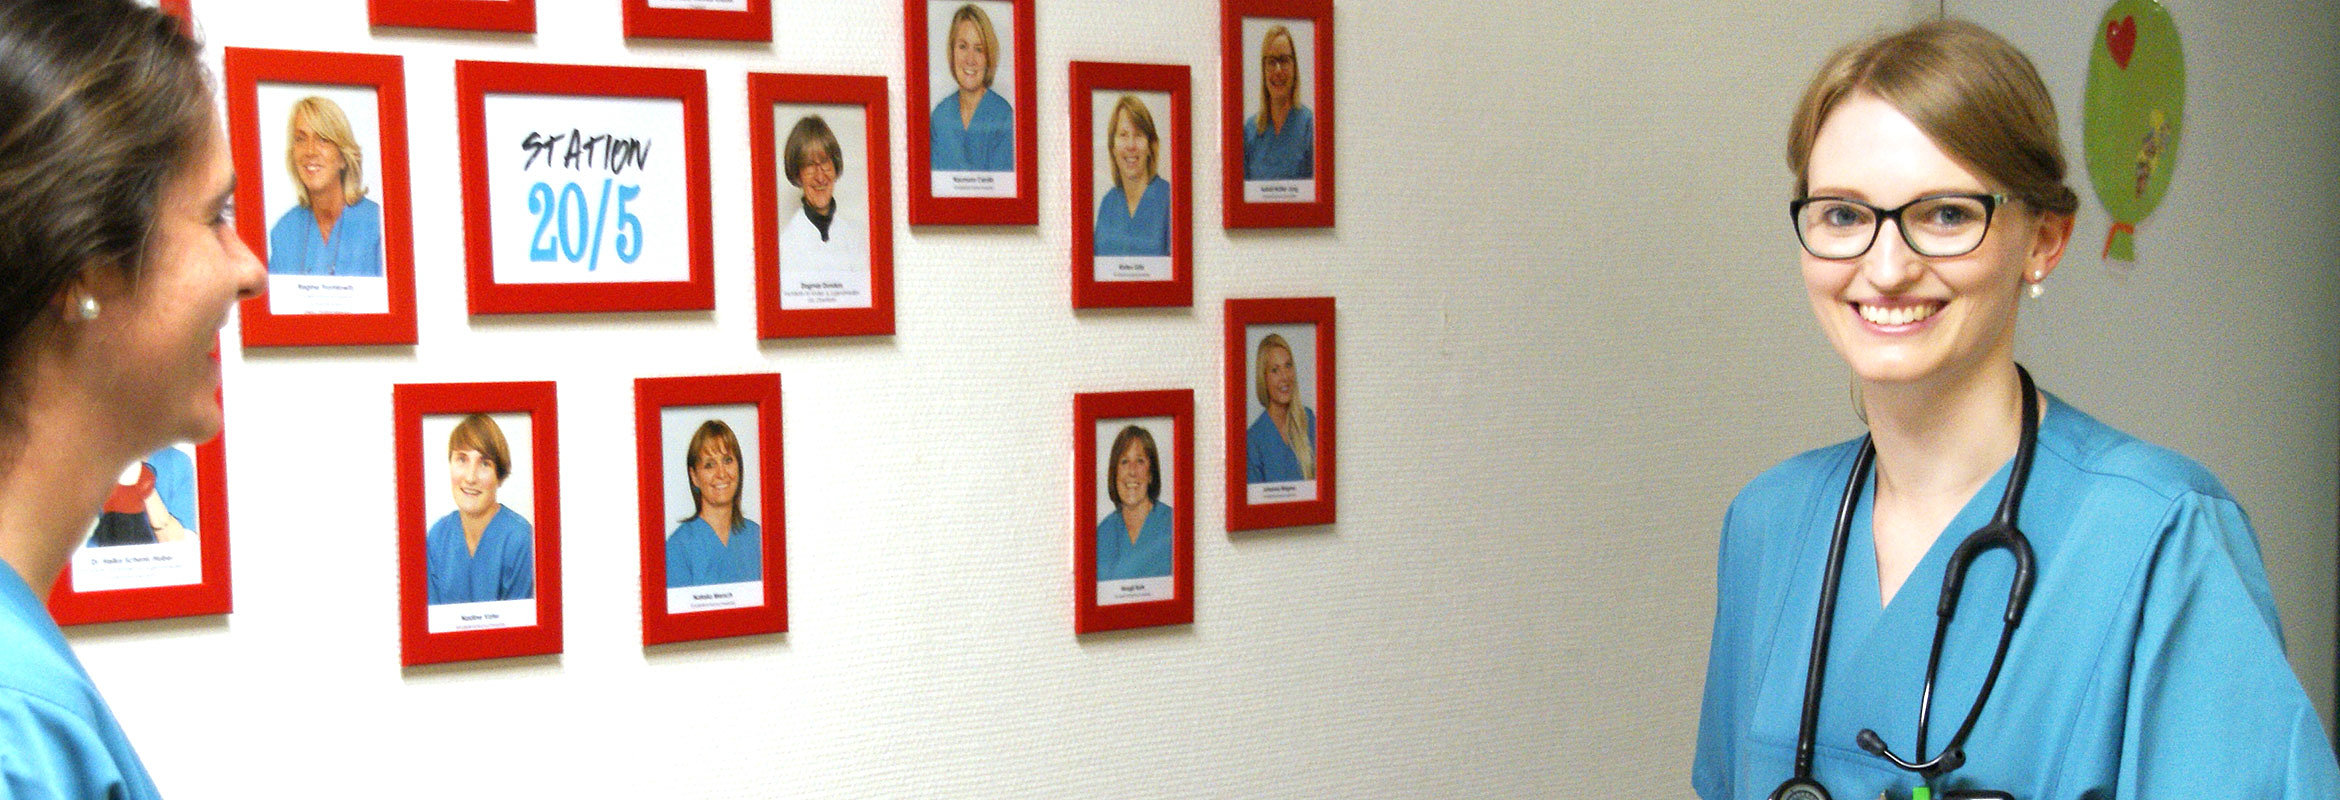 Auf dem Flur der Kinderklinik hängen Bilder von allen Mitarbeiter:innen an der Wand